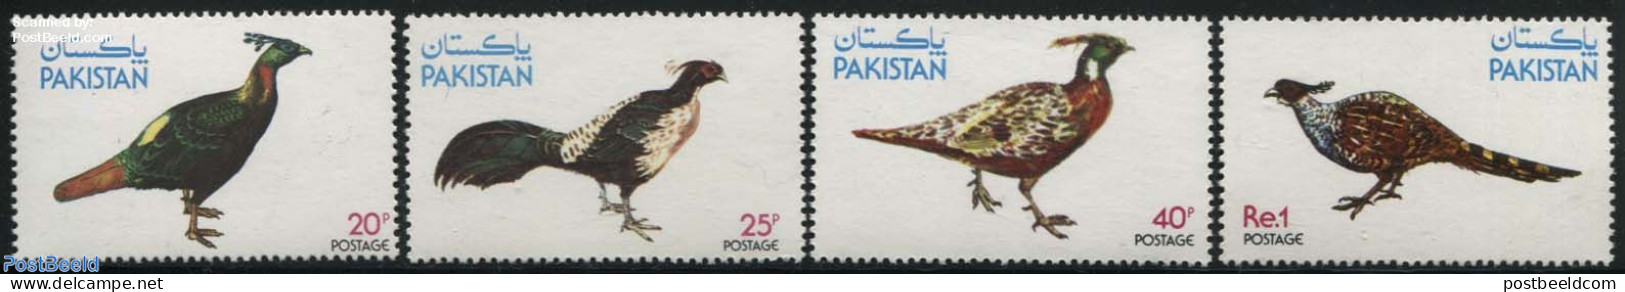 Pakistan 1979 Pheasants 4v, Mint NH, Nature - Birds - Poultry - Pakistan